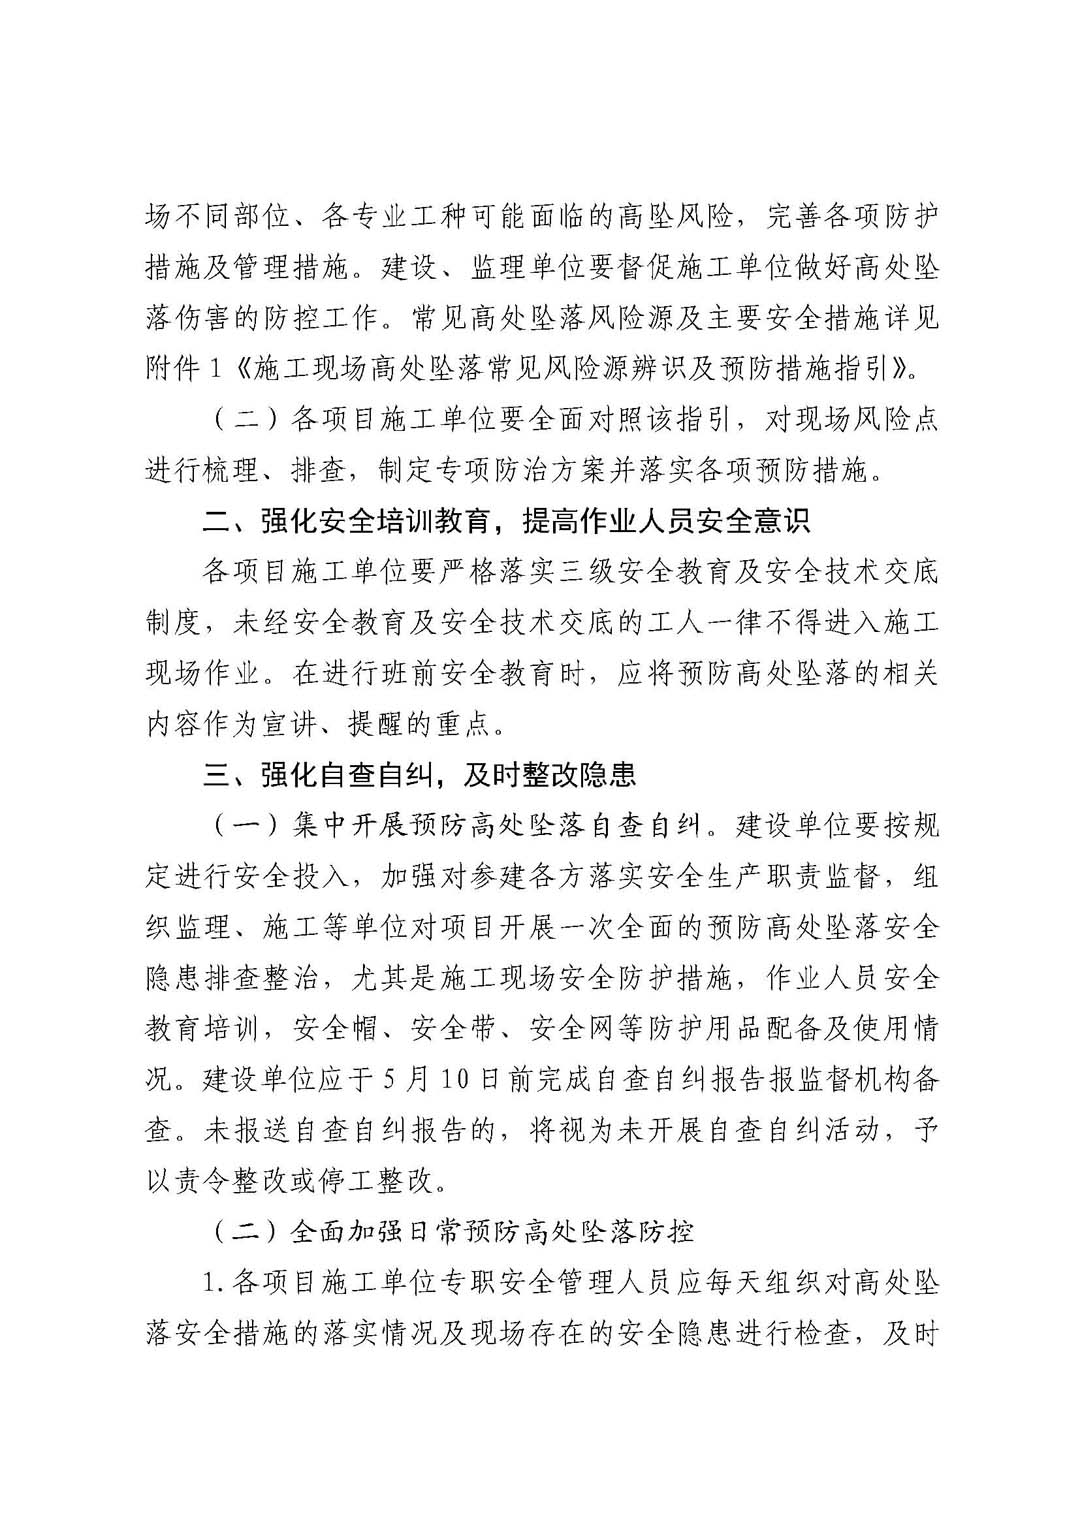 深圳市住房和建设局关于开展预防高坠专项整治行动的通知_页面_02.jpg